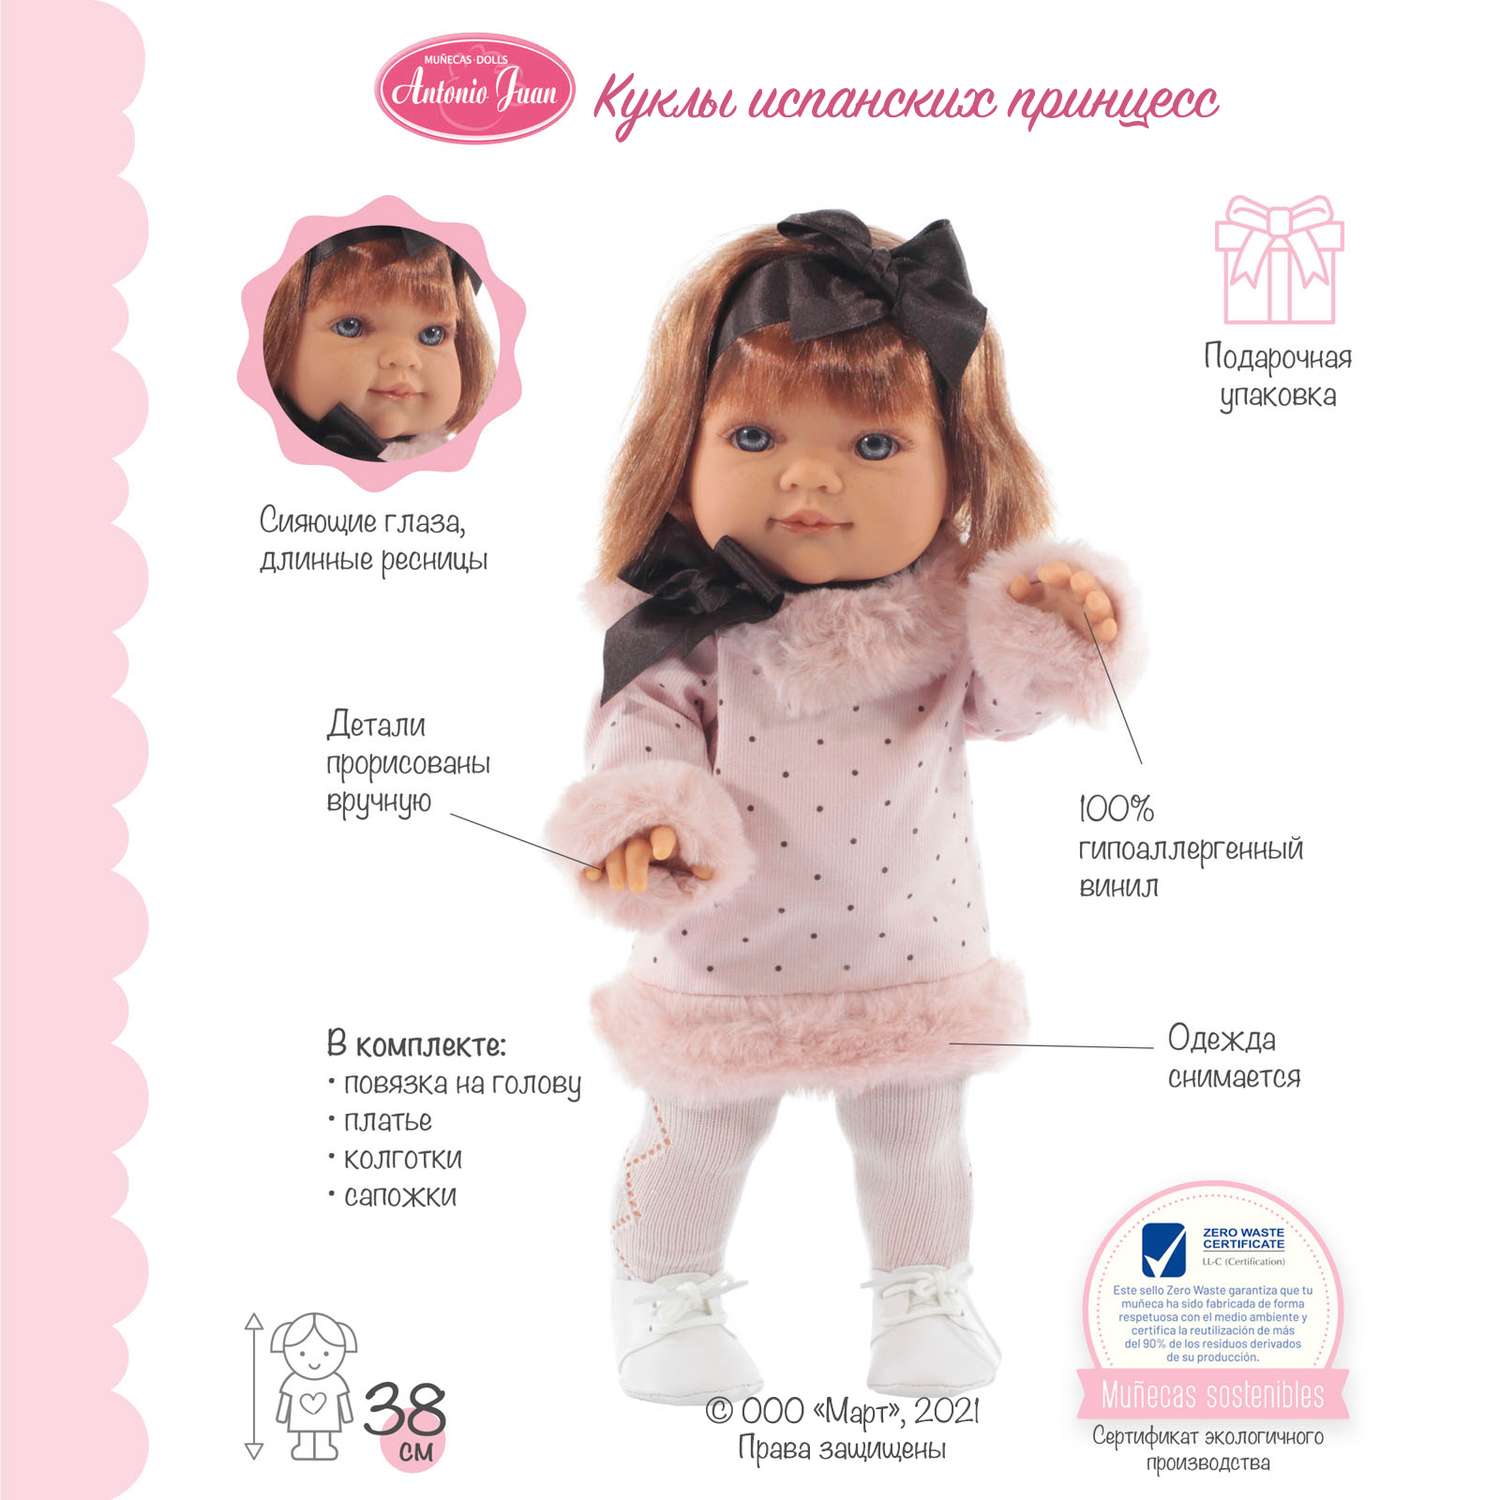 Кукла модель Antonio Juan Констация в платье в горошек 38 см виниловая 2268P - фото 3